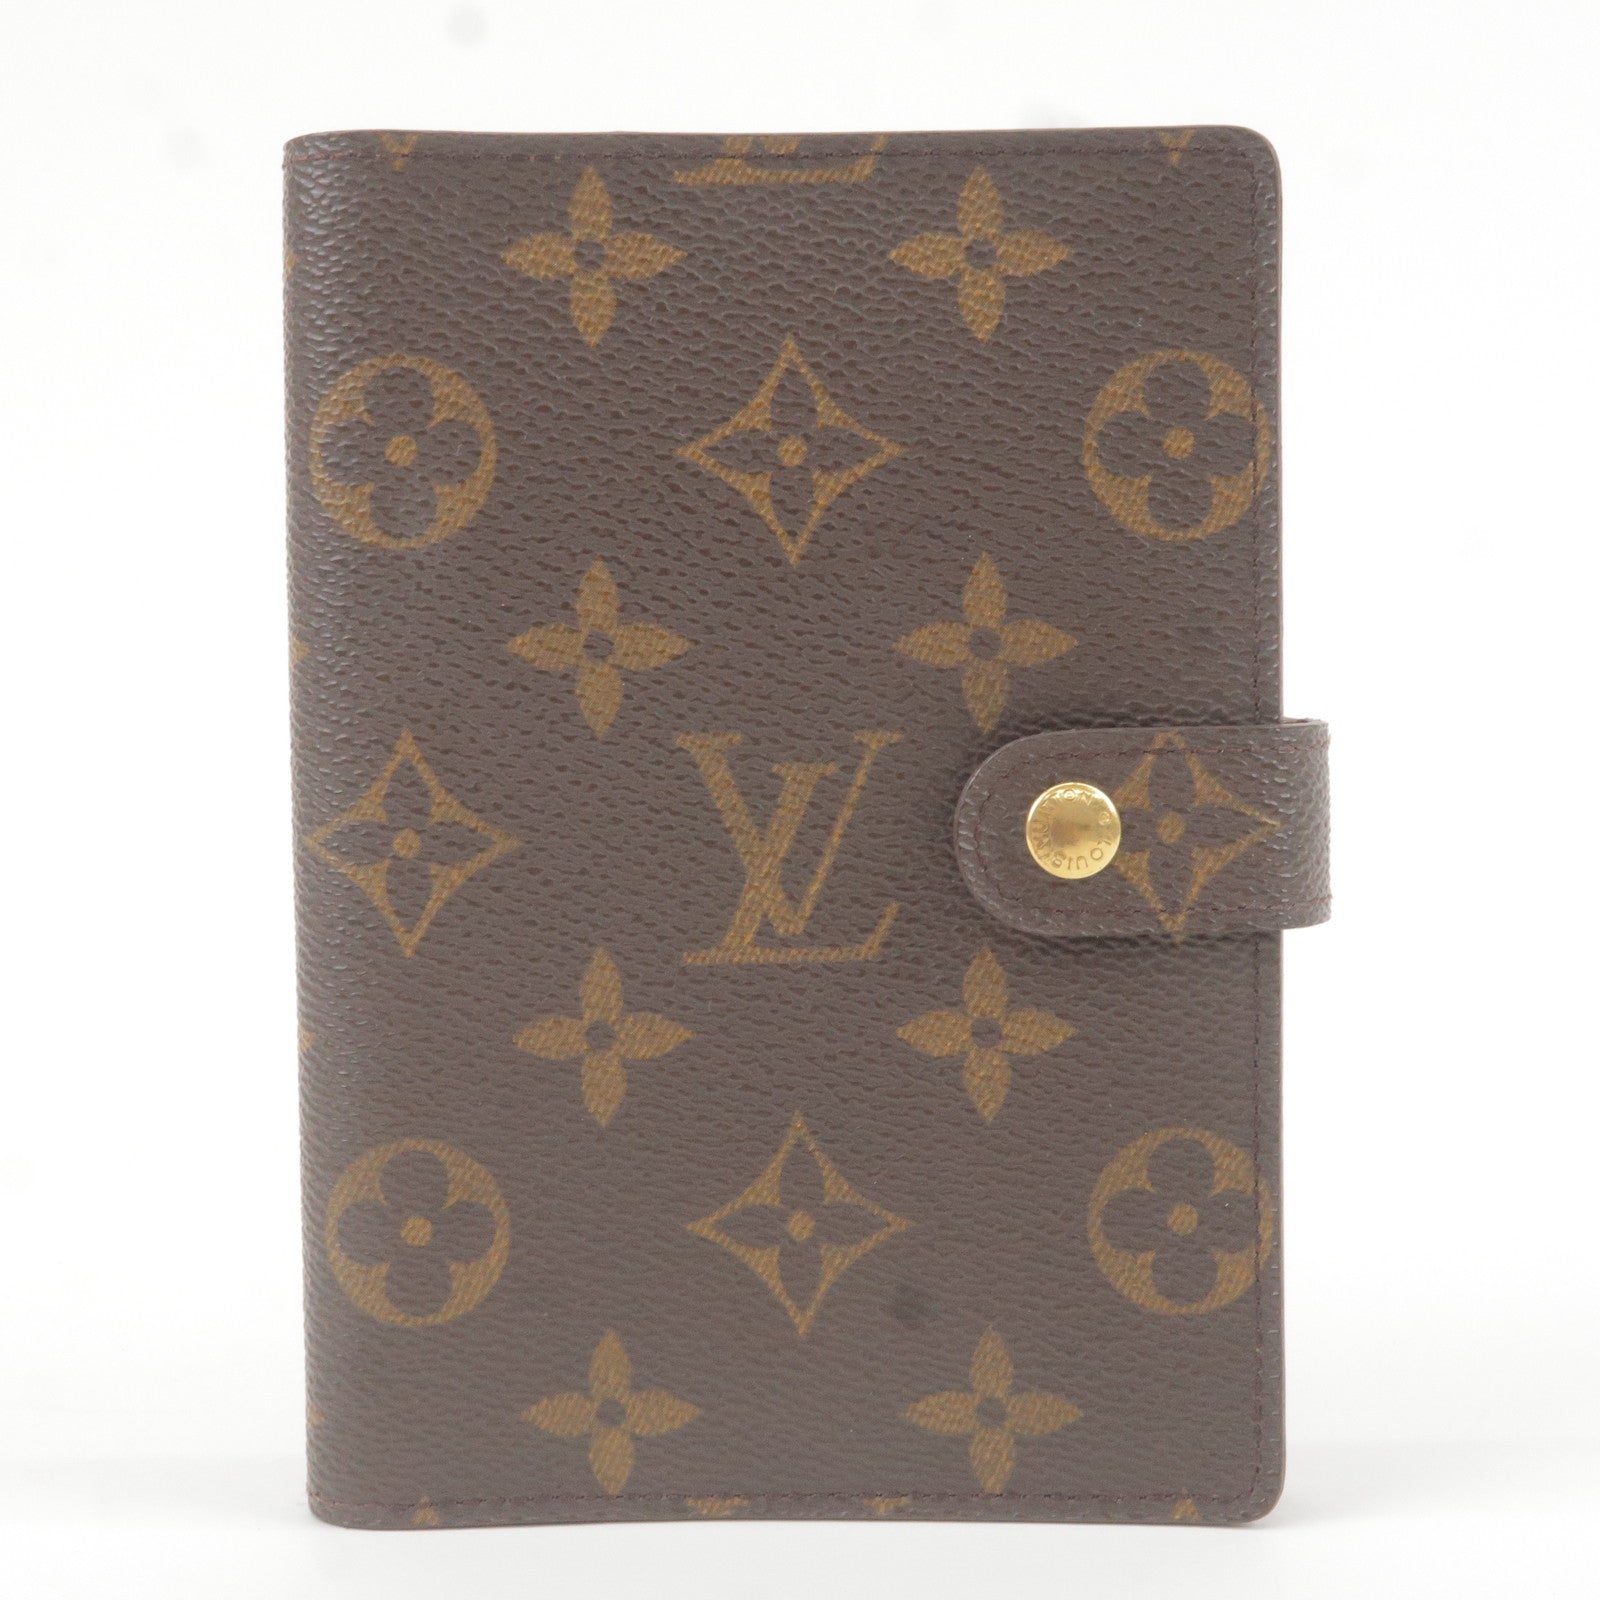 Louis Vuitton x Grace Coddington Speedy 30 Bandouliere bag